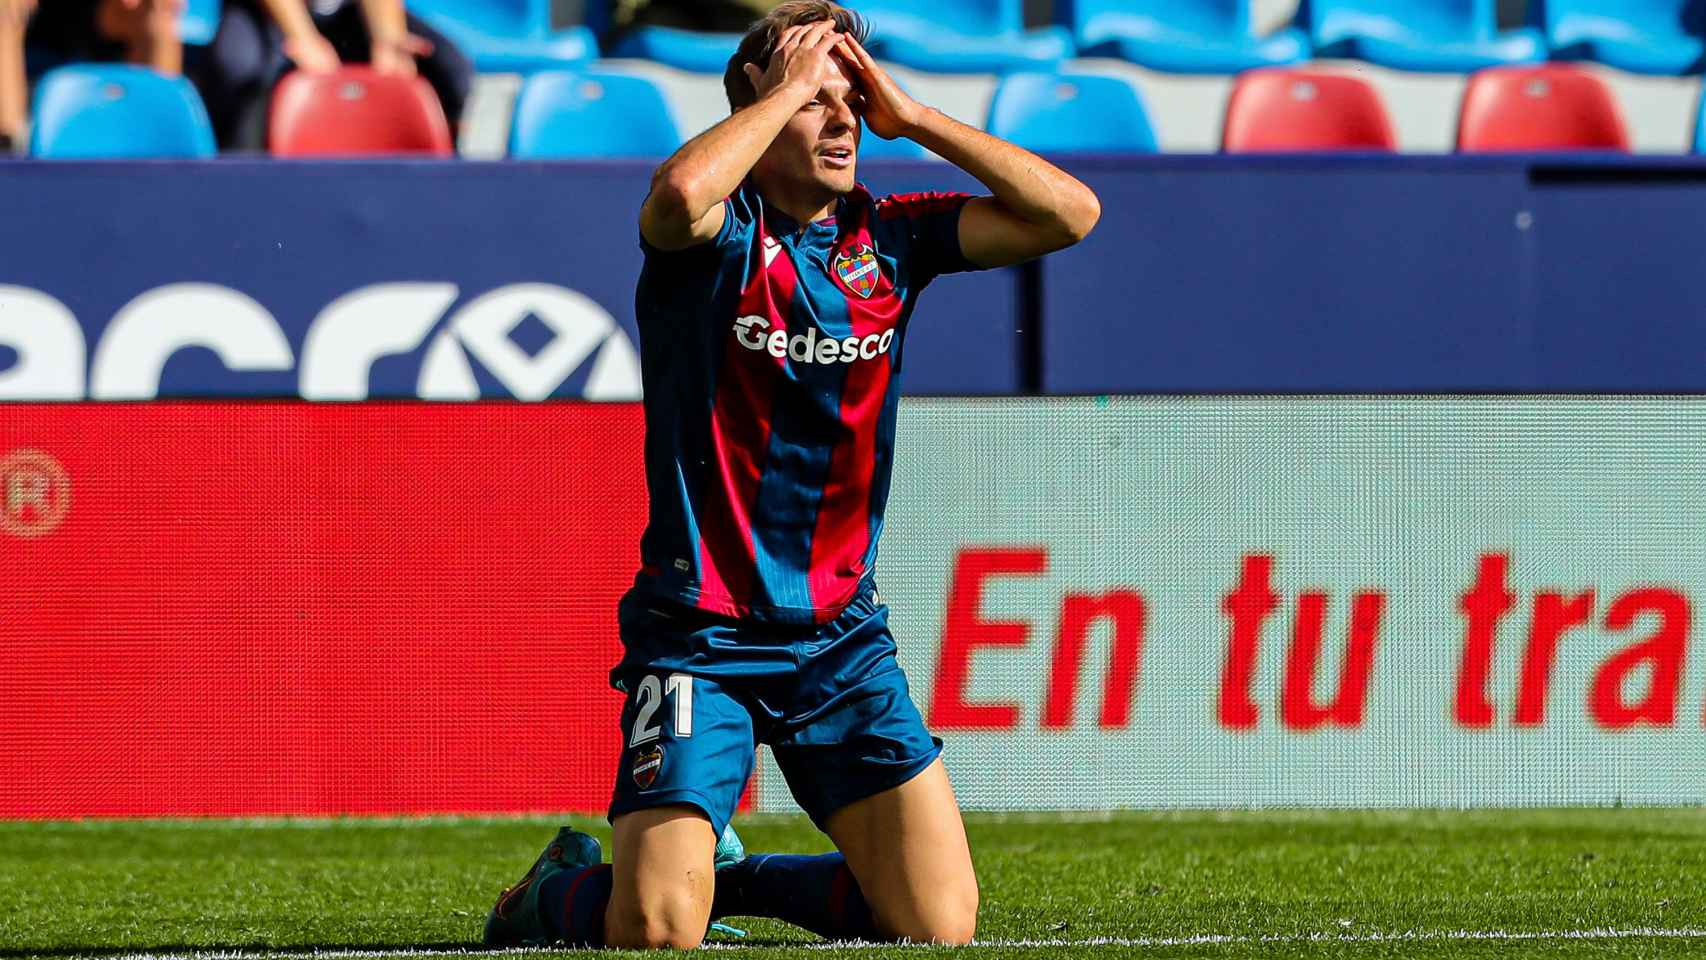 Gedesco patrocinó al Levante UD en la temporada 2021/2022.